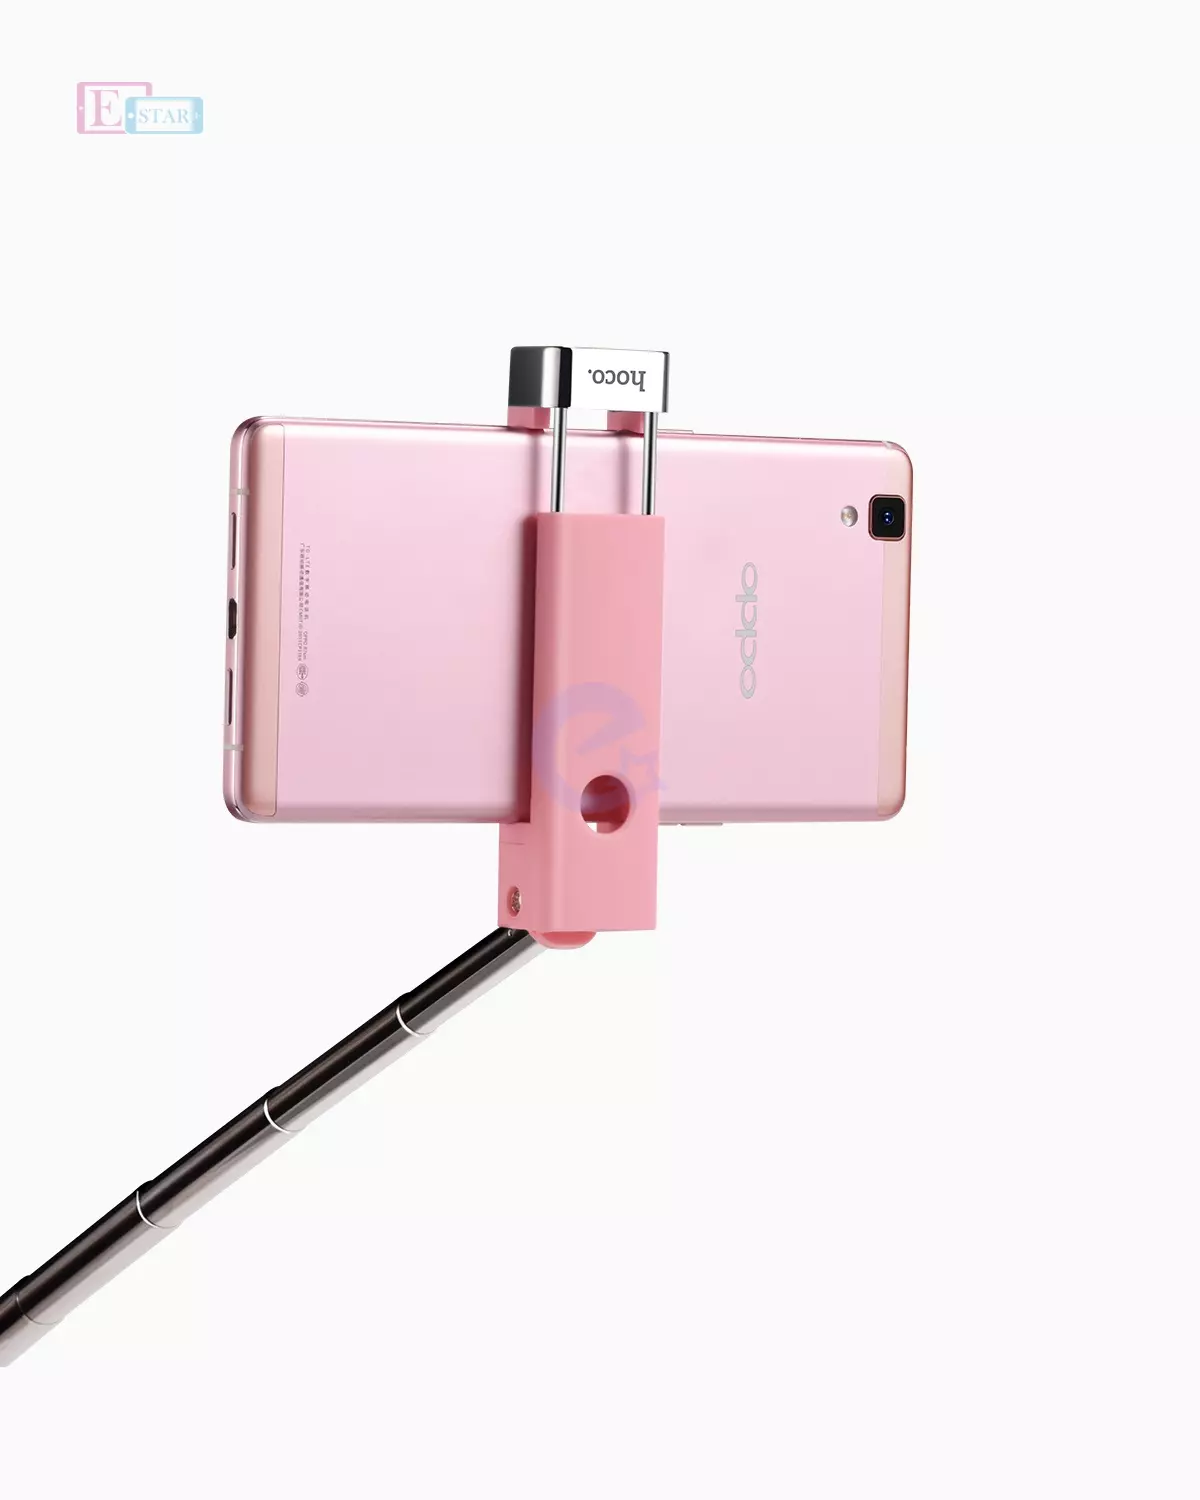 Оригинальная селфи палка Hoco K4 Beauty Wireless Selfie Stick и смартфонов Green (Зелёный)